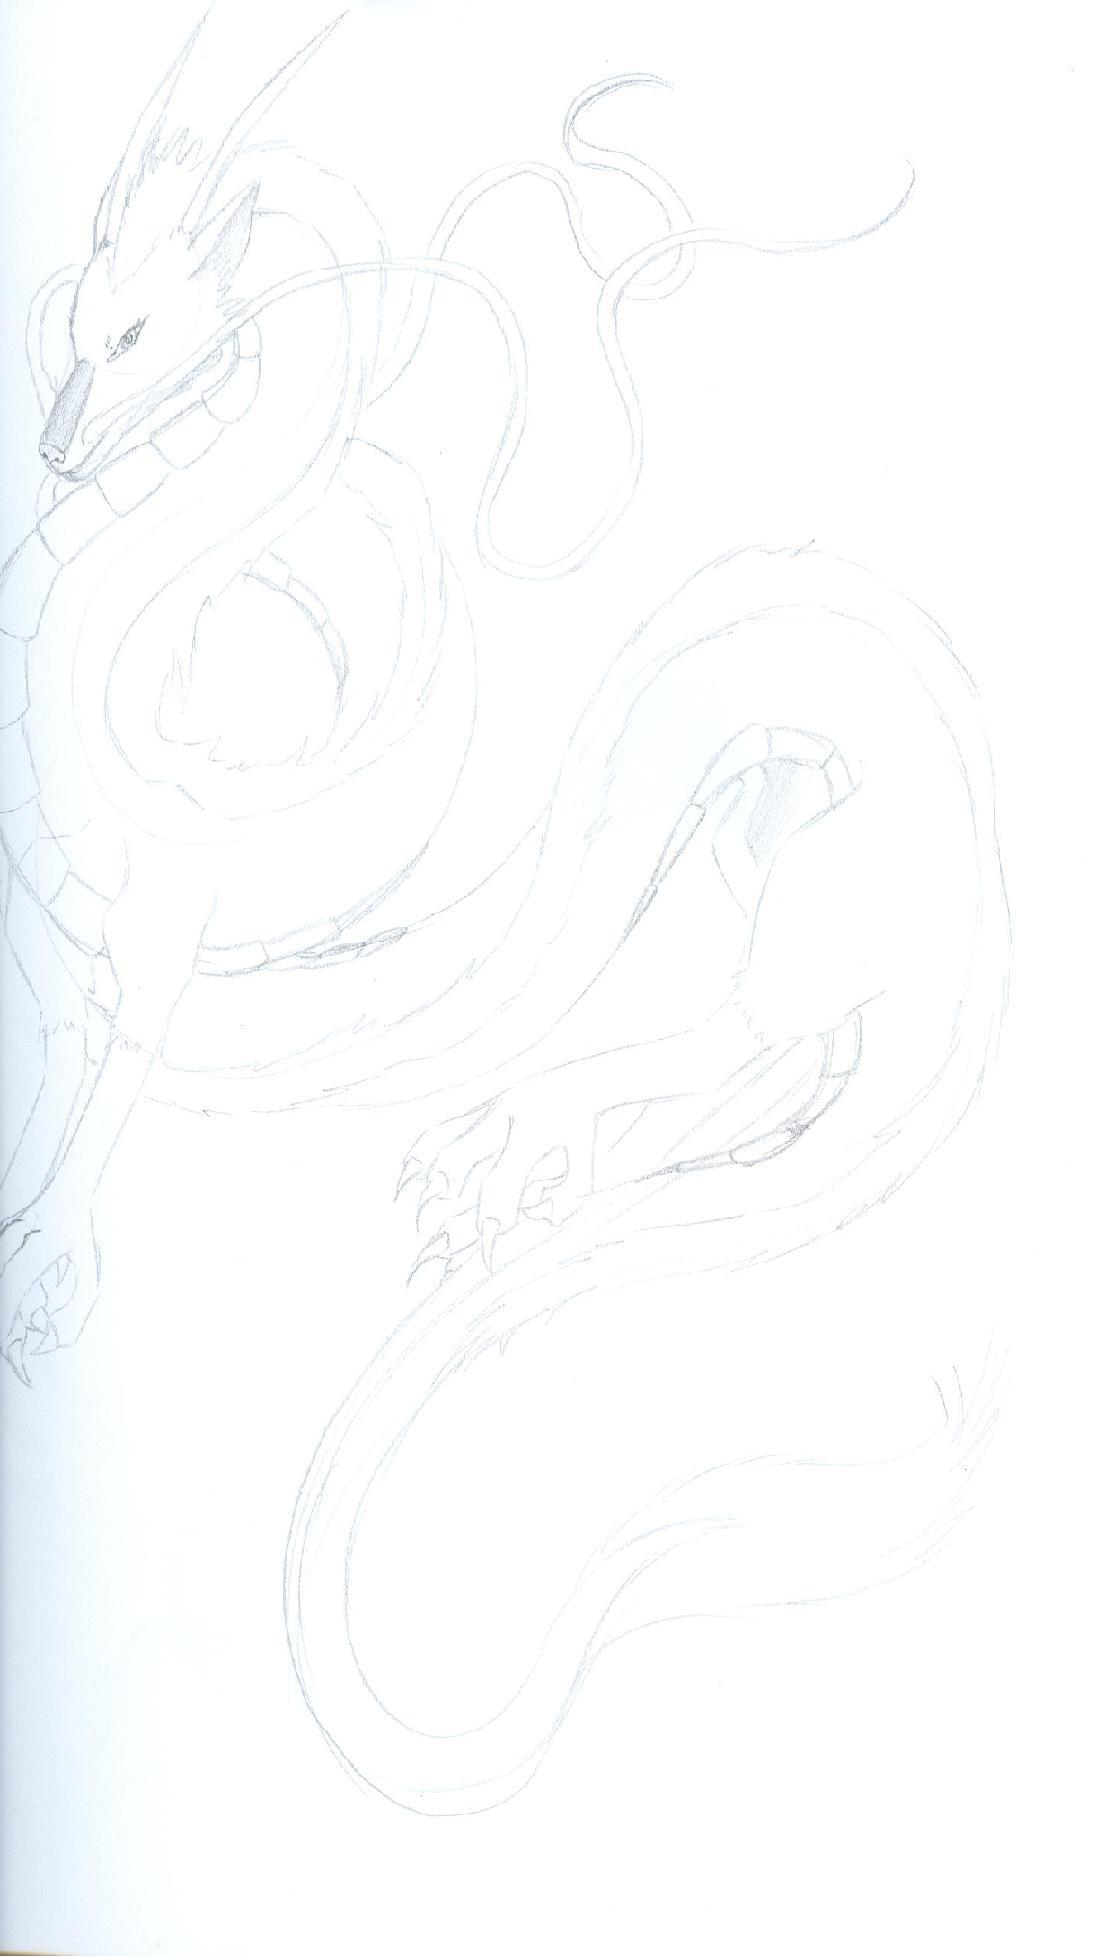 Haku-Dragon sketch by Isukaru